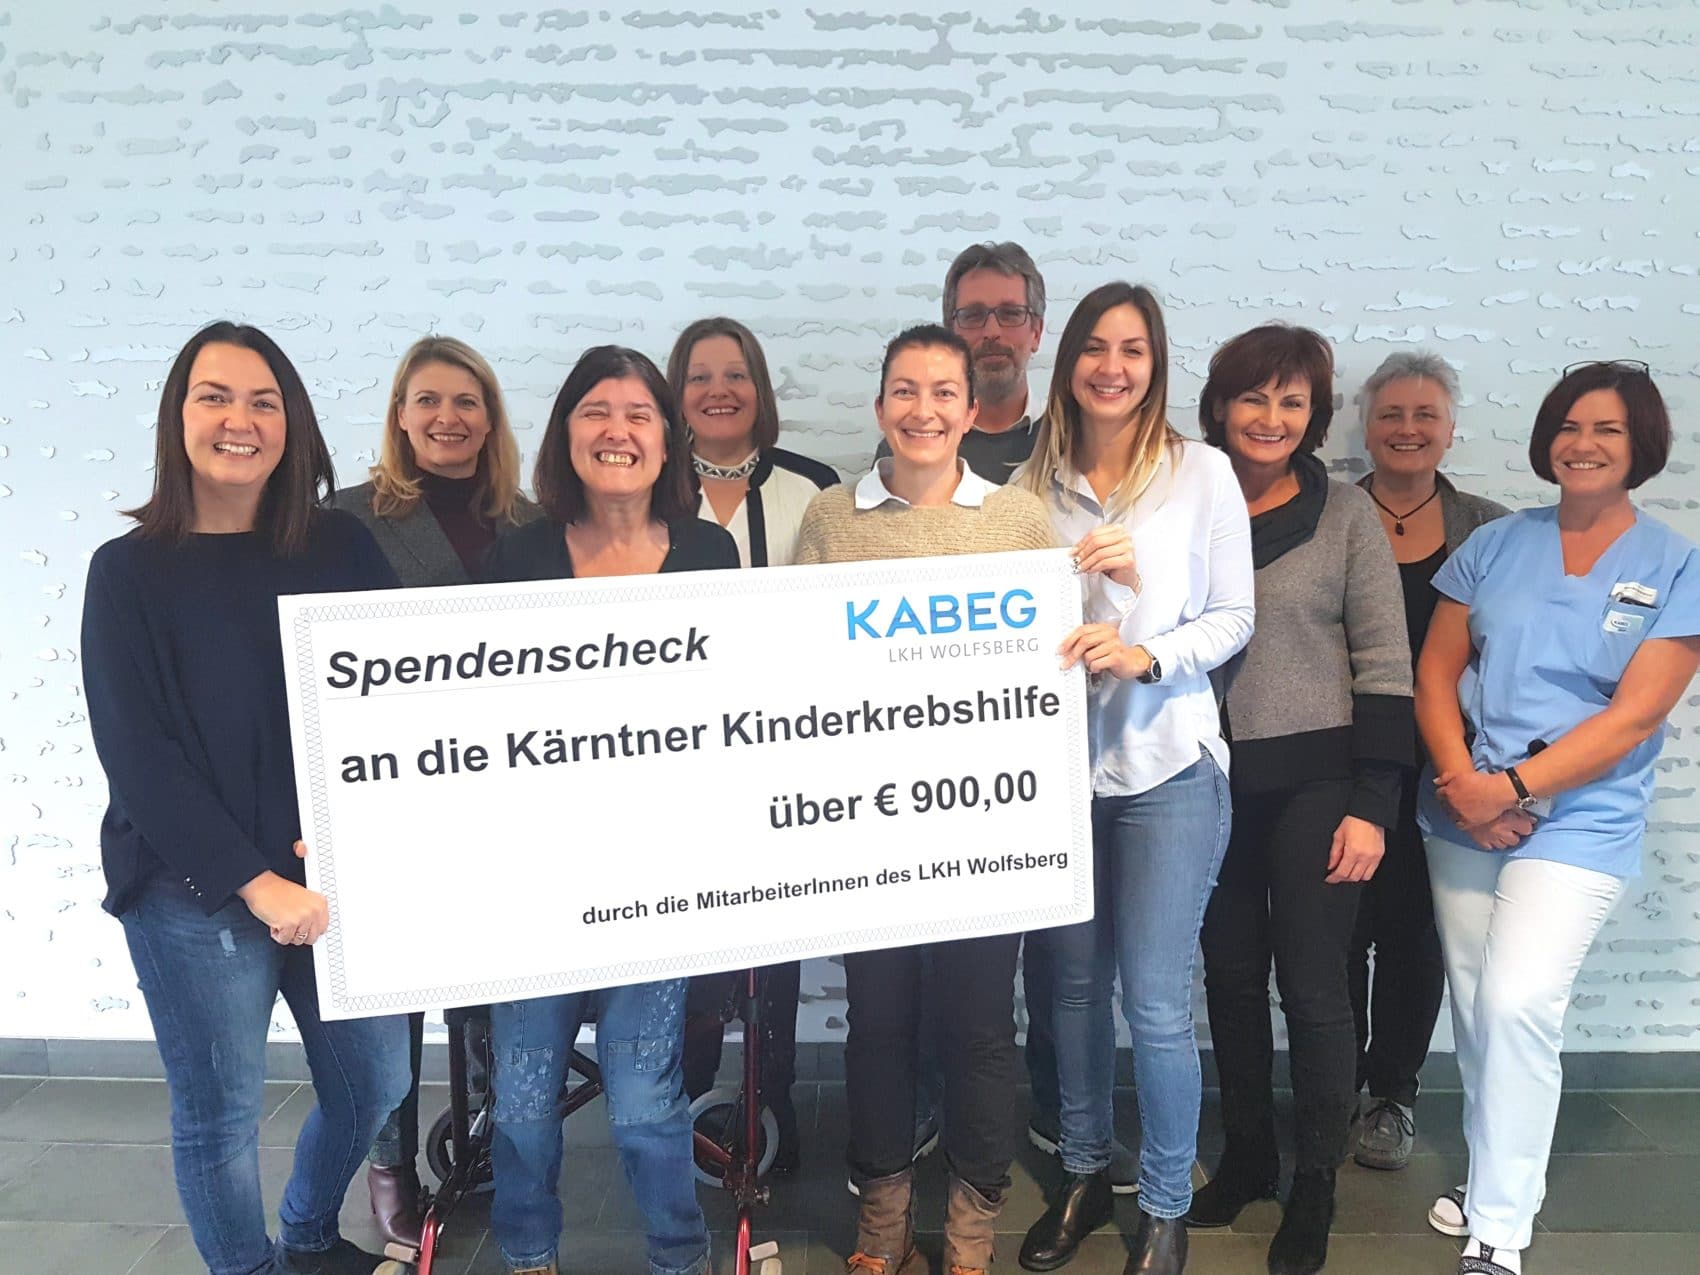 Mitarbeiter des LKH Wolfsberg übergeben den Scheck an Karin Raffalt (1. von links) von der Kärntner Kinderkrebshilfe